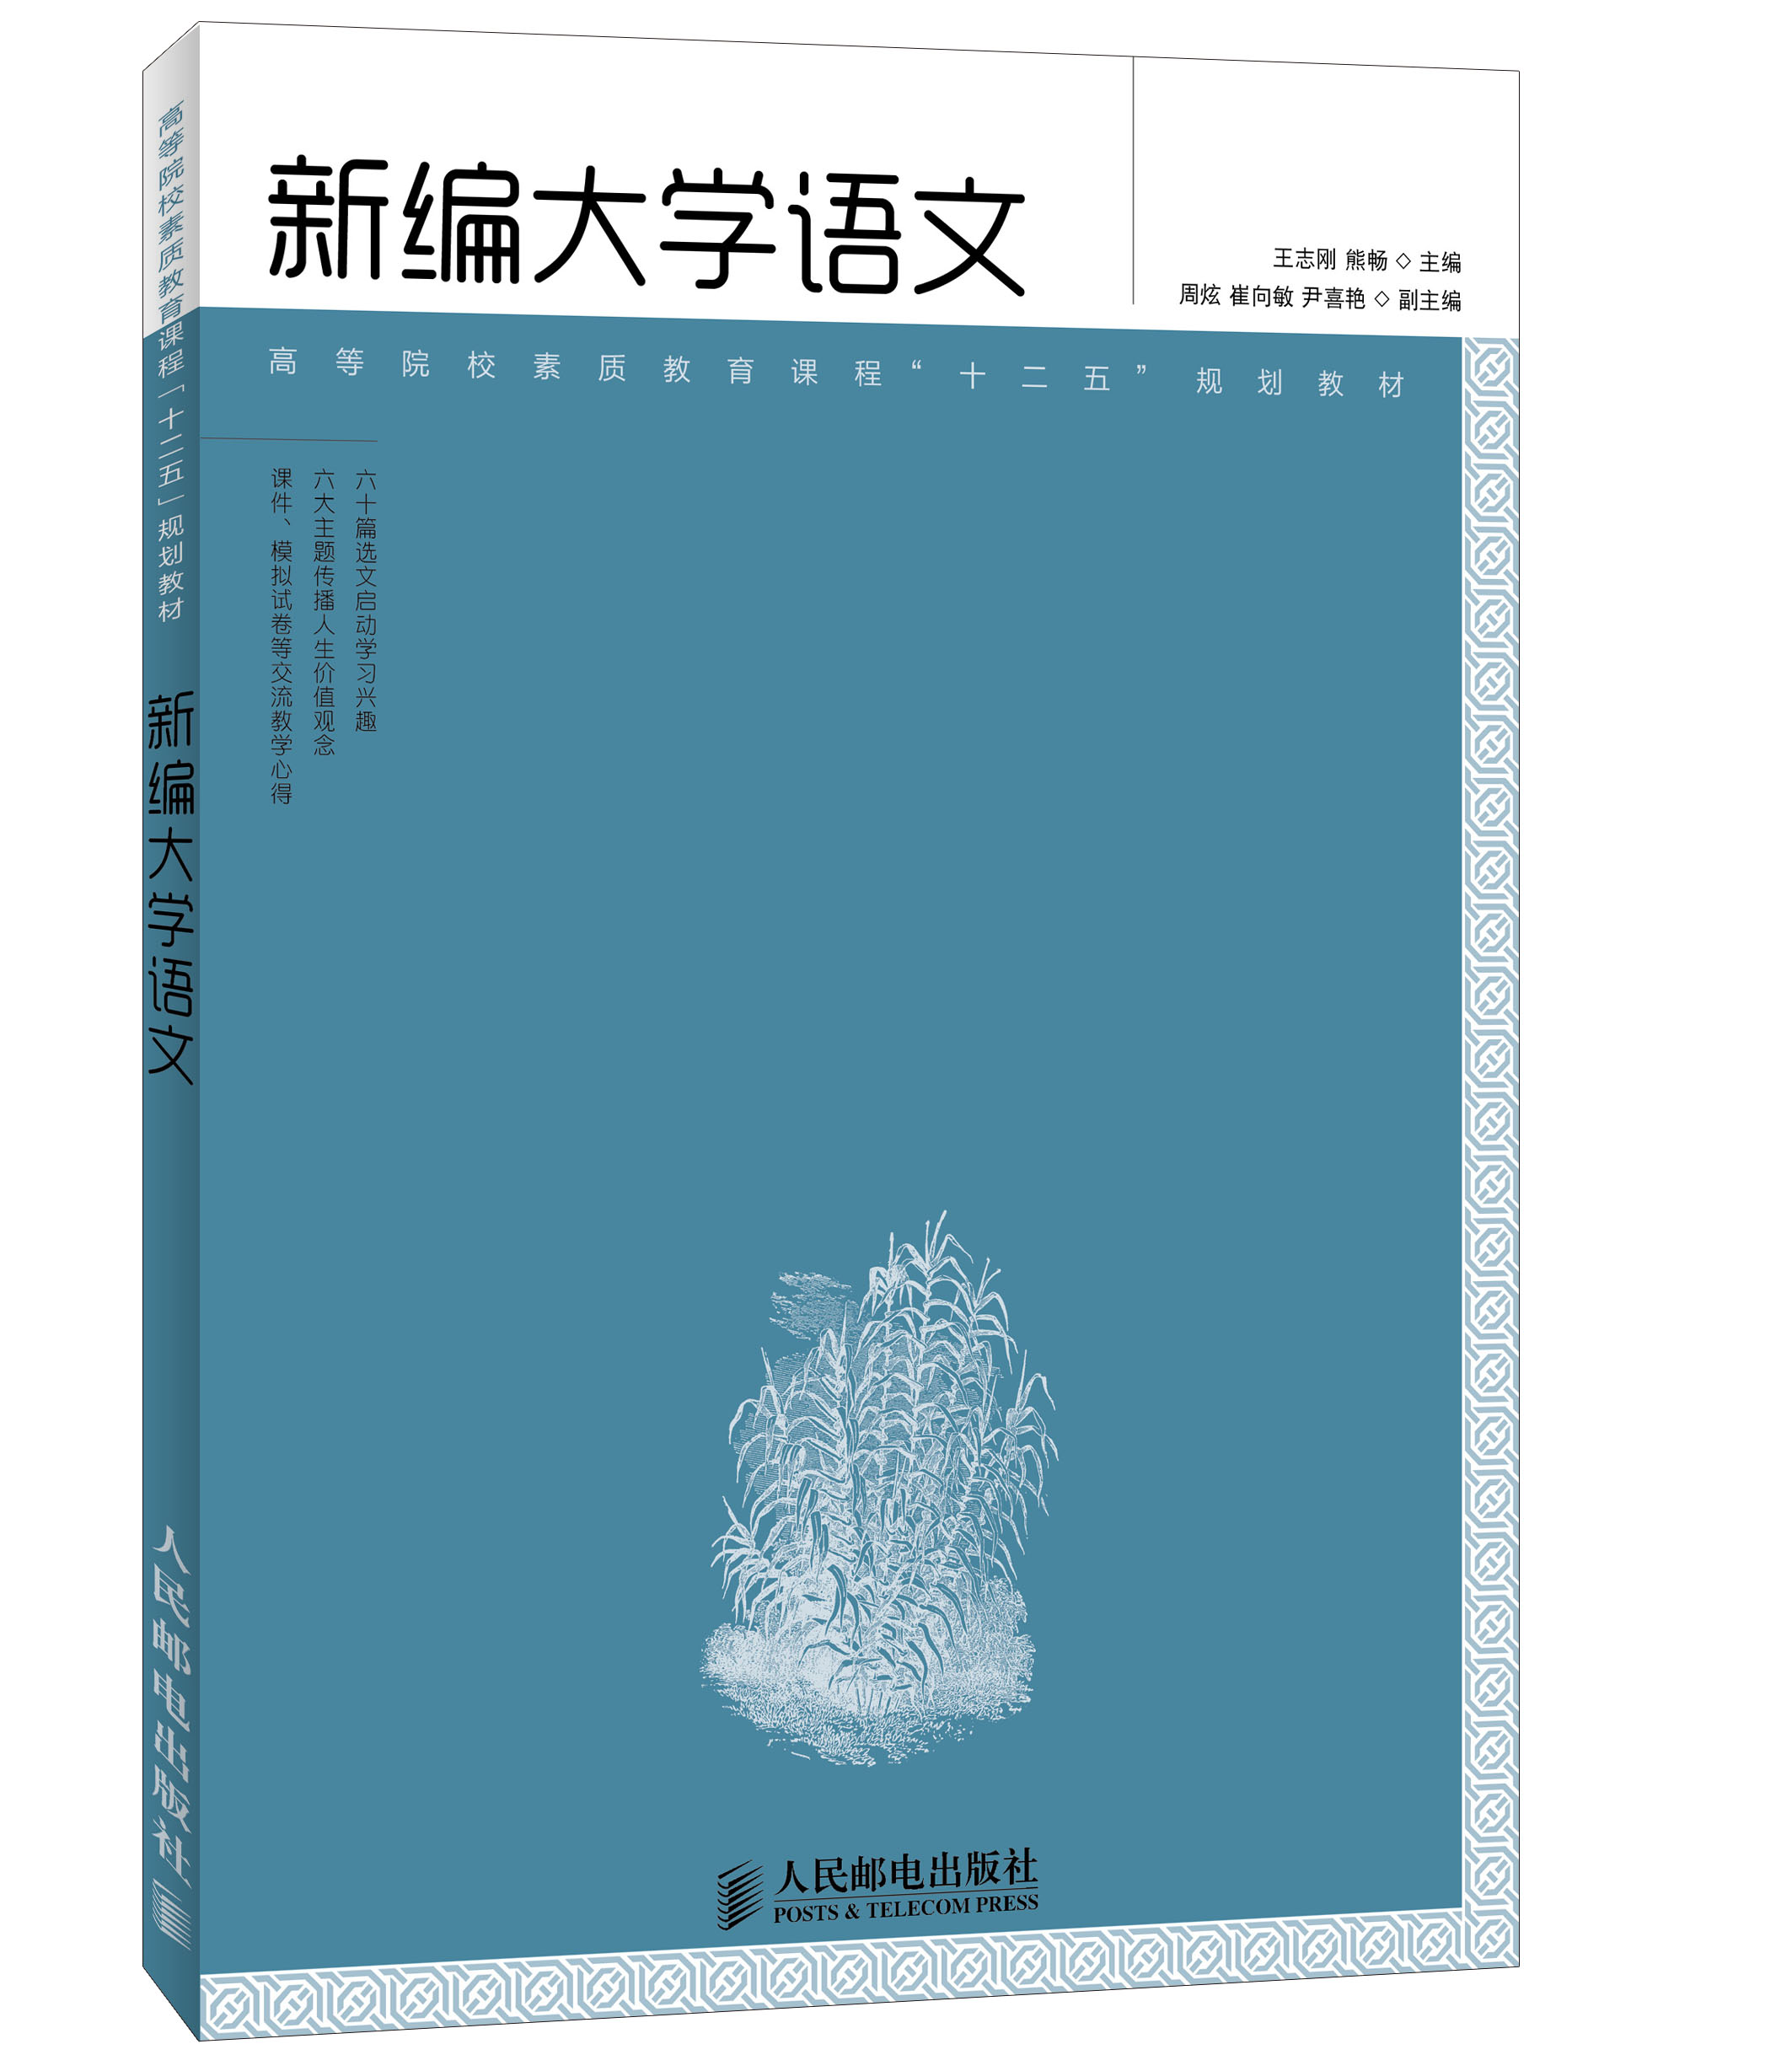 新編大學語文(2013年人民郵電出版社出版圖書)